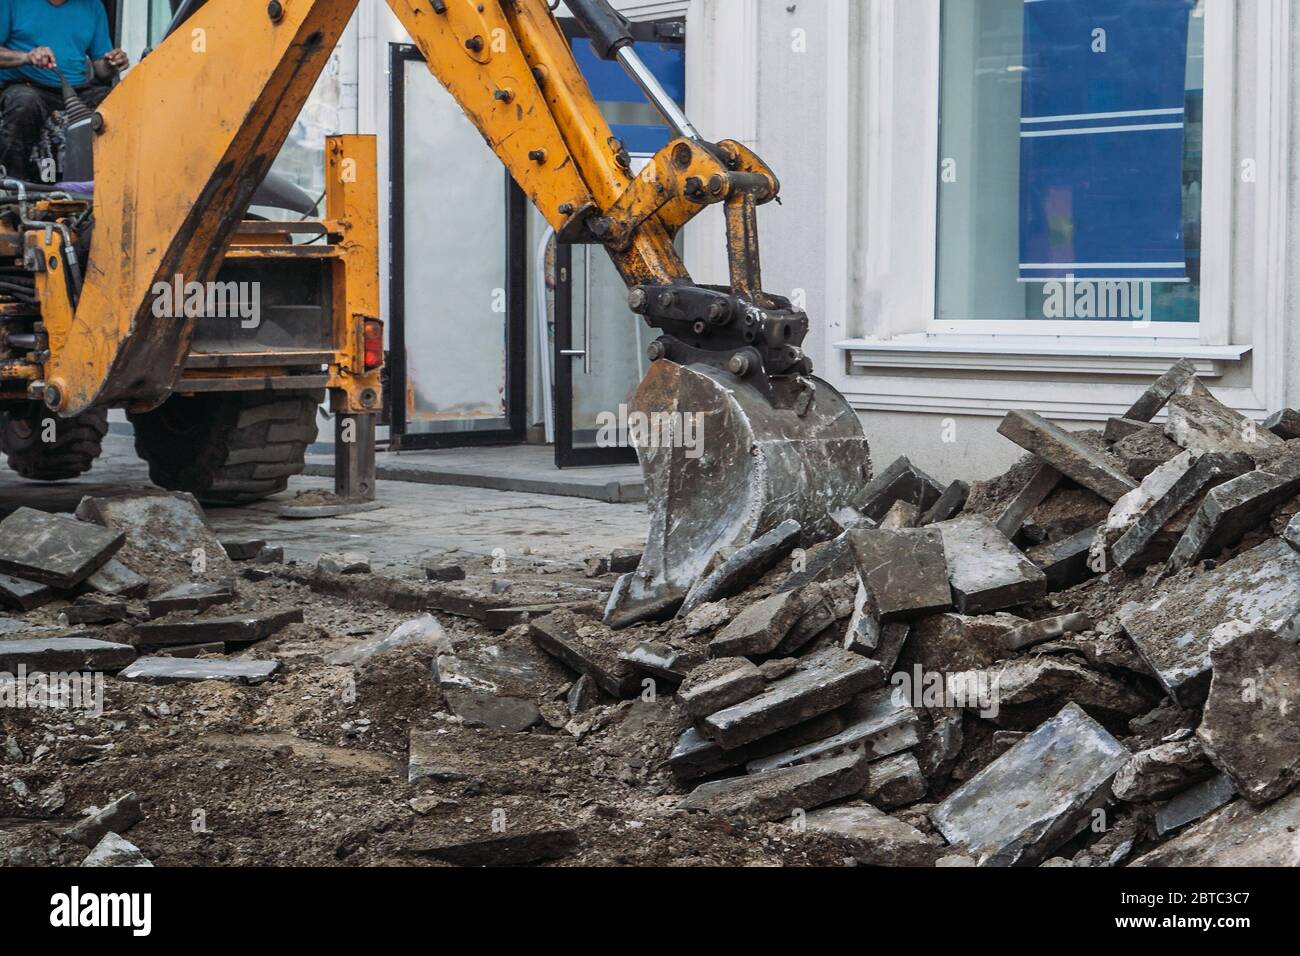 Excavator bucket breaks paving slabs. Sidewalk dismantling and repair work in city. Stock Photo